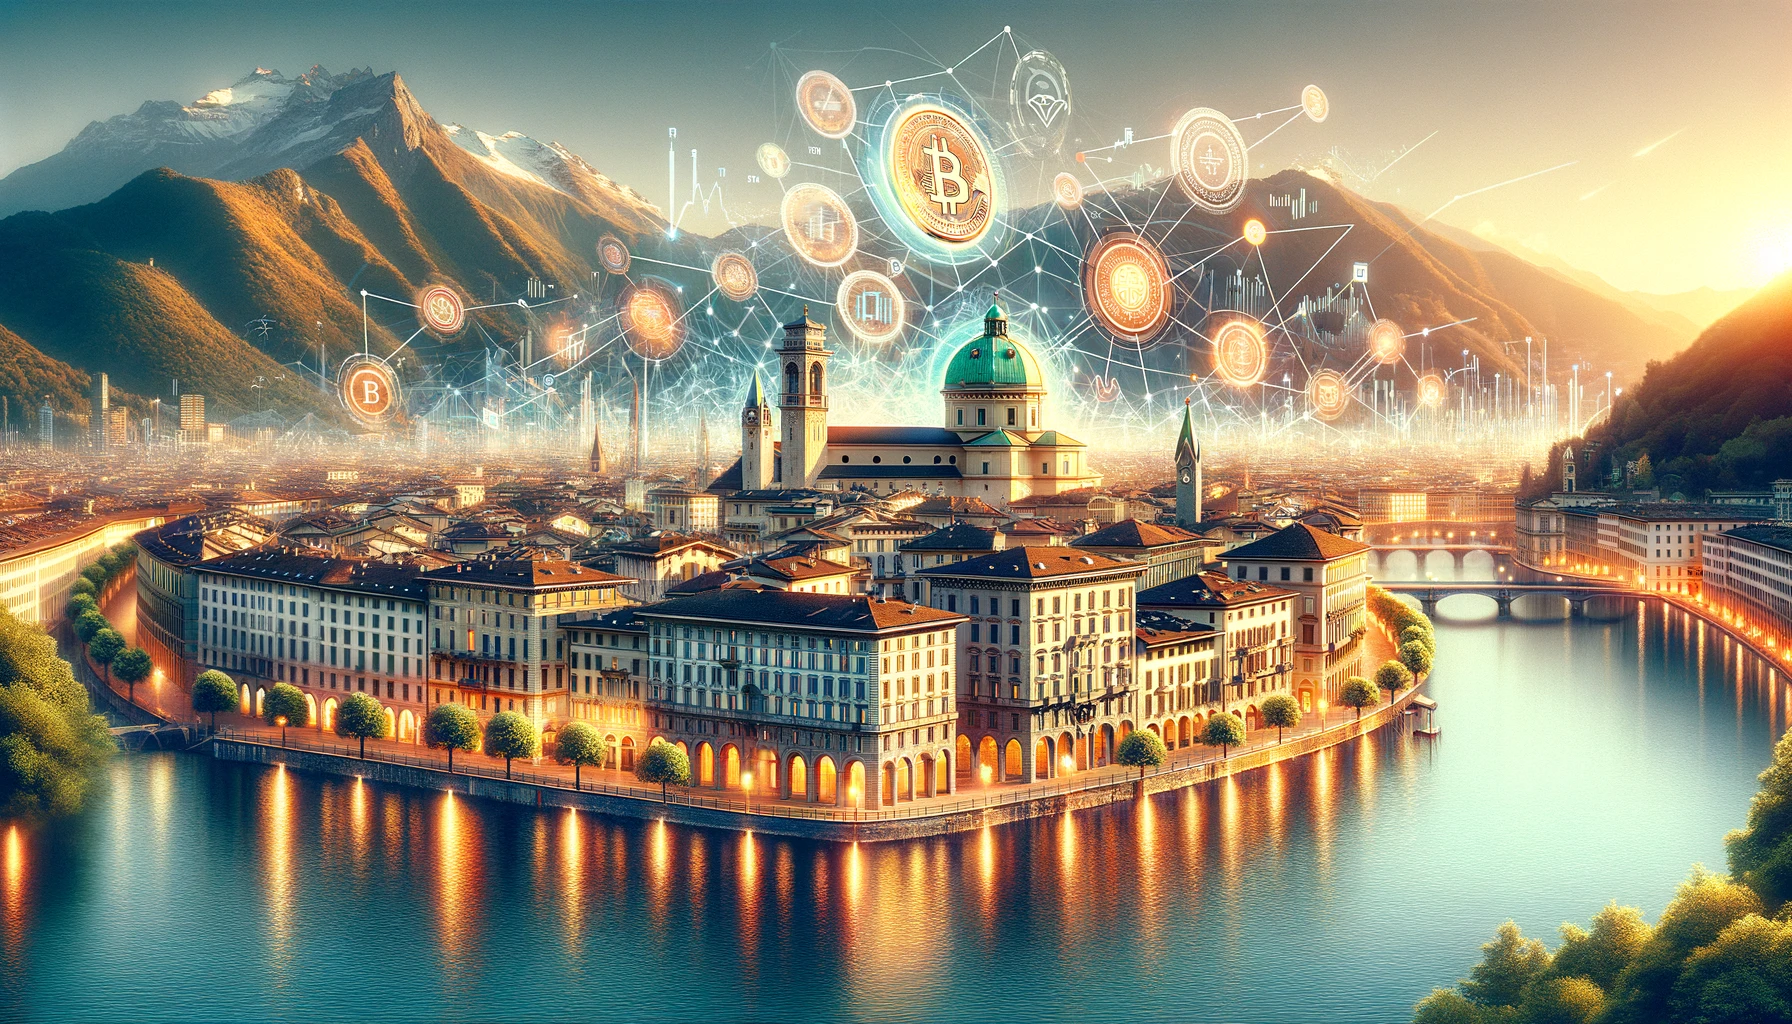 Lugano startet neue digitale Anleihe in Zusammenarbeit mit der Schweizerischen Nationalbank